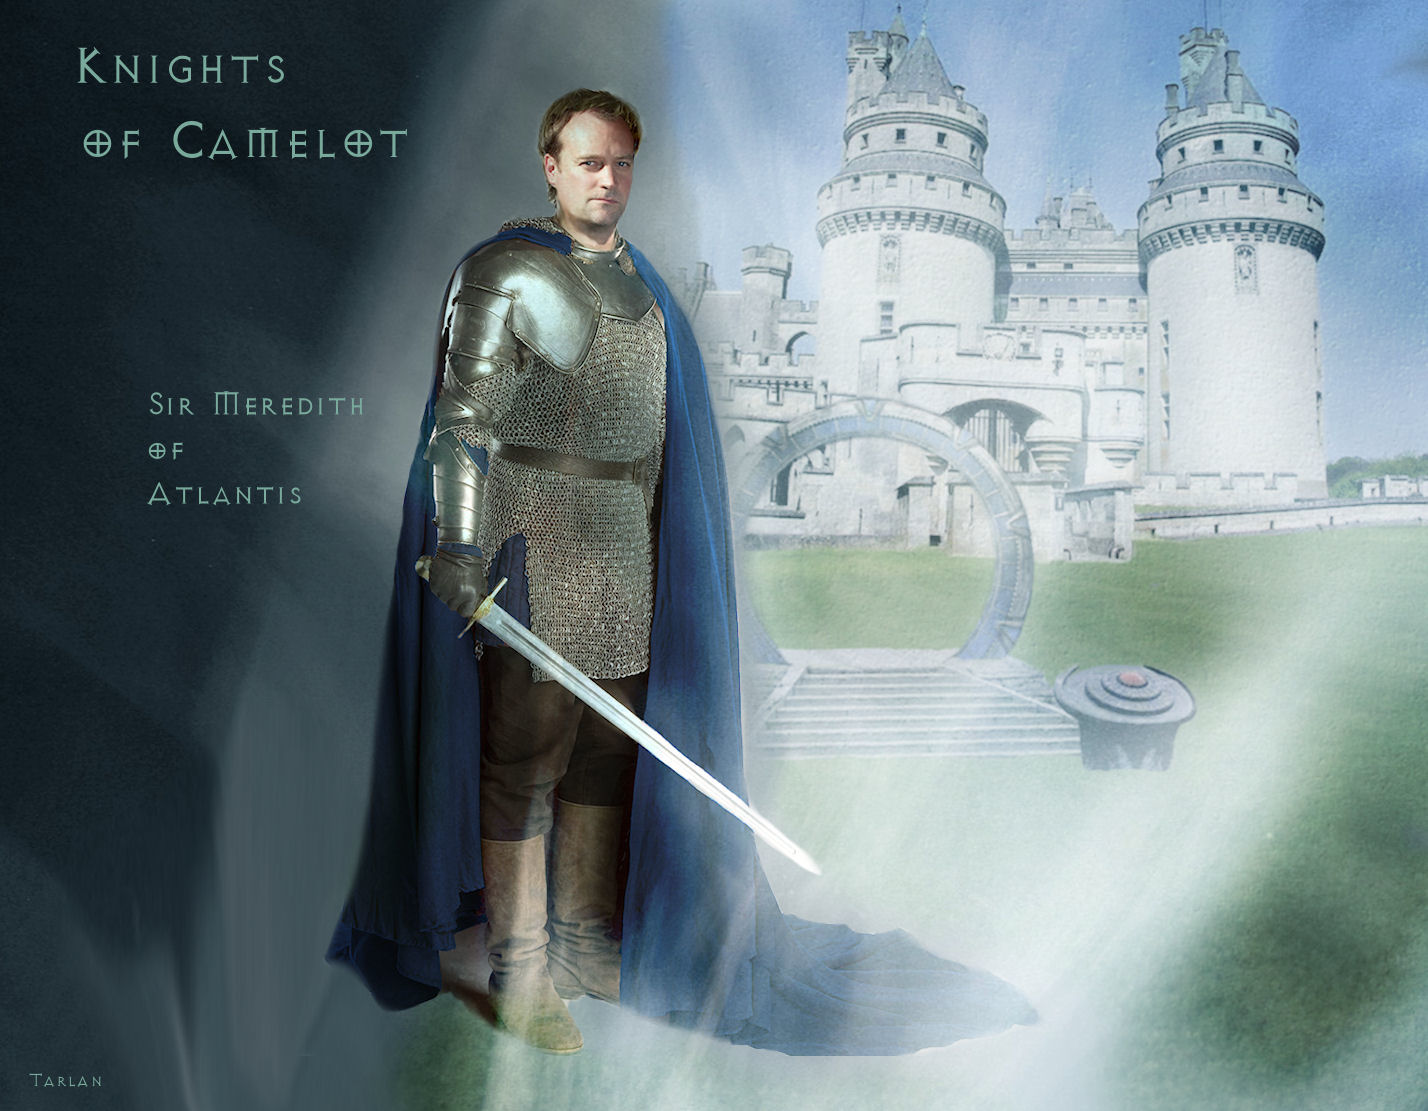 Knights of Camelot - Merlin by Tarlan
Art by Tarlan
art_bingo - crossovers
Keywords: stargate_atlantis_art;stargate_atlantis_wpr